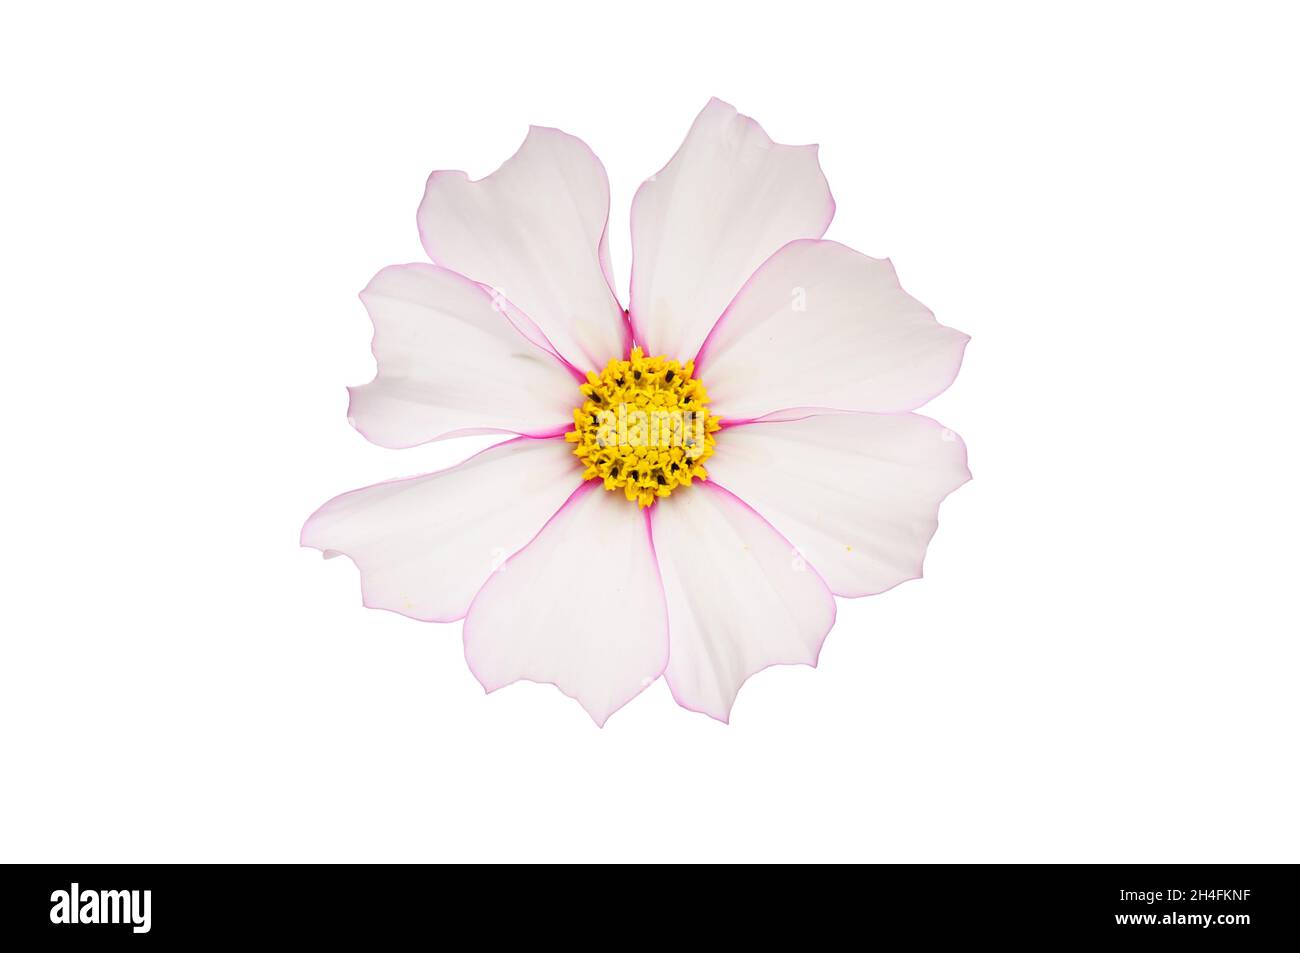 Fiore COSMOS con petali bianchi frangiati con rosso isolato contro bianco Foto Stock